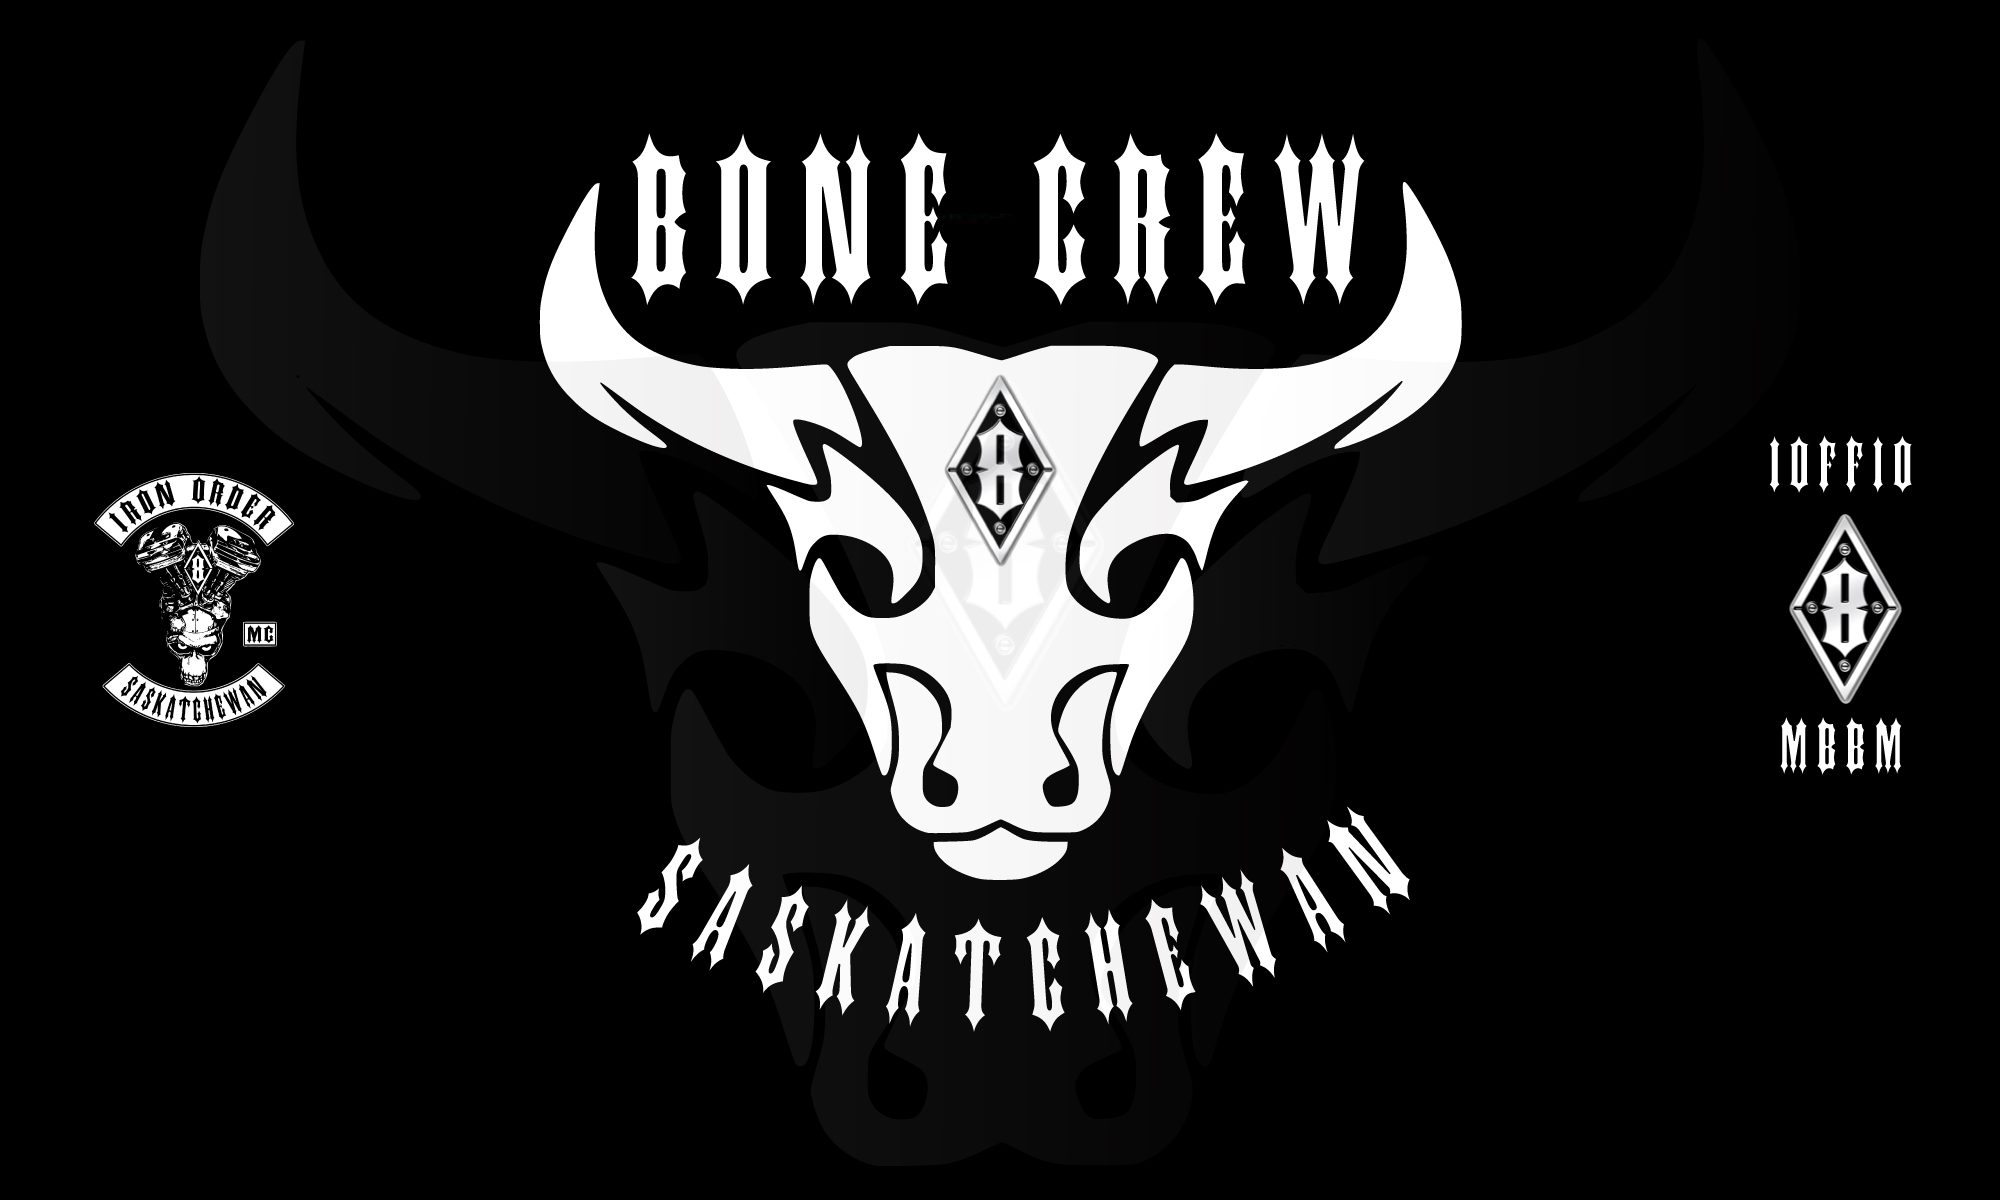 Iron Order / Bone Crew, Saskatchewan, Canada